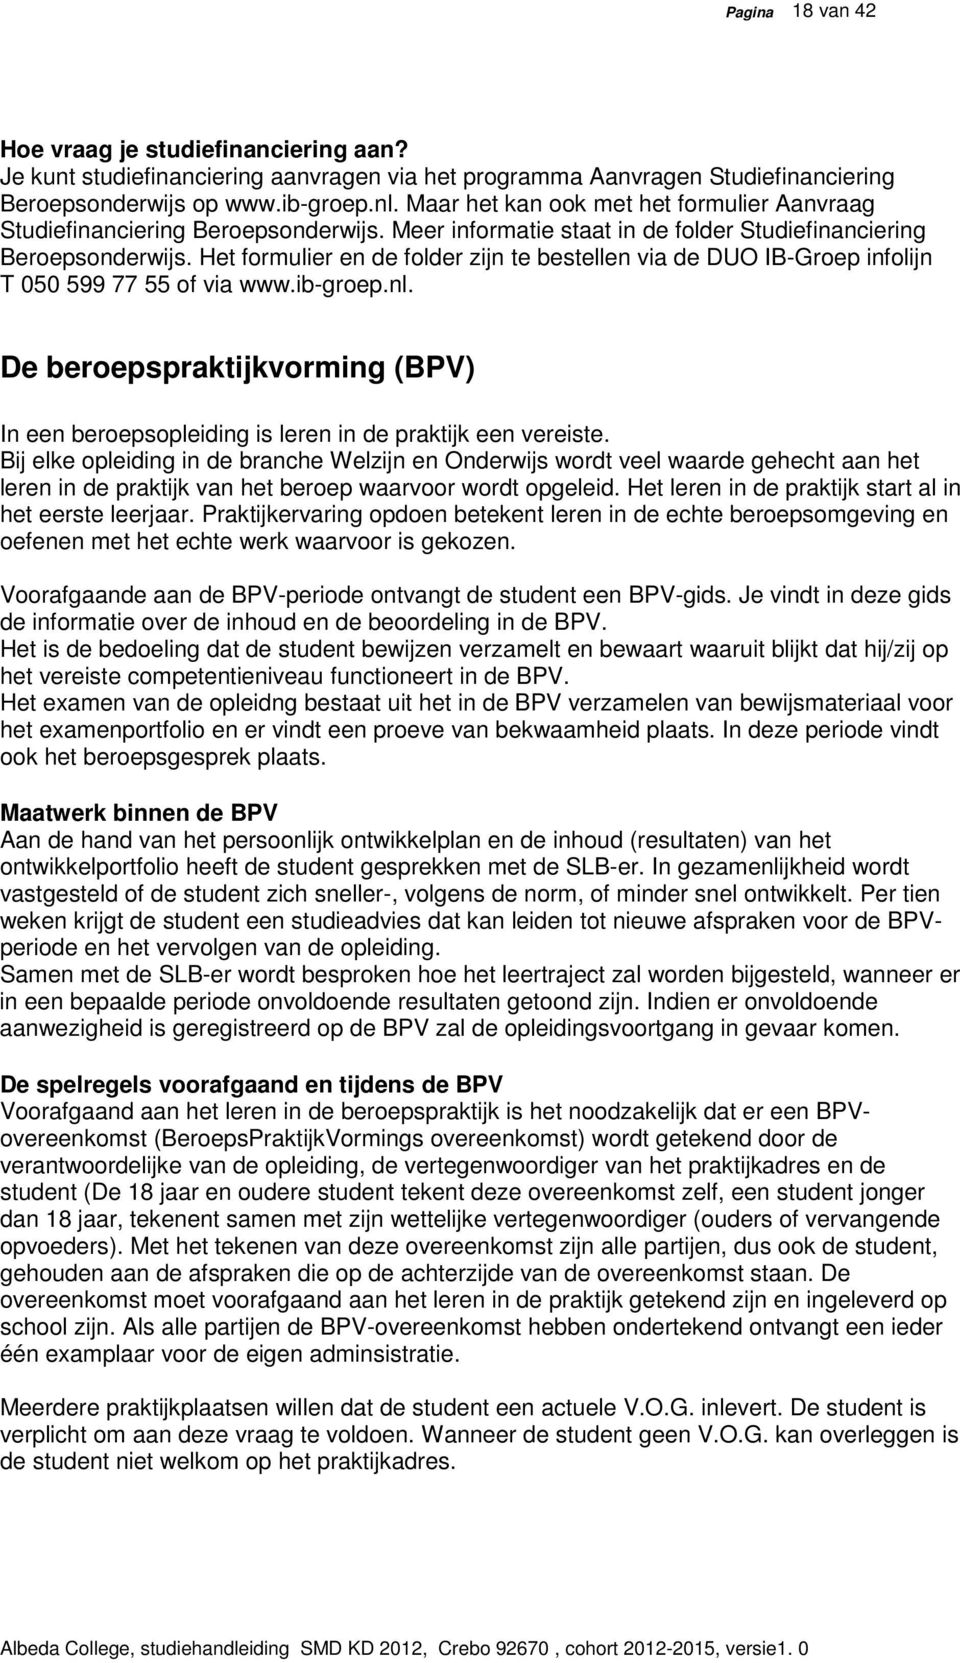 Het formulier en de folder zijn te bestellen via de DUO IB-Groep infolijn T 050 599 77 55 of via www.ib-groep.nl.